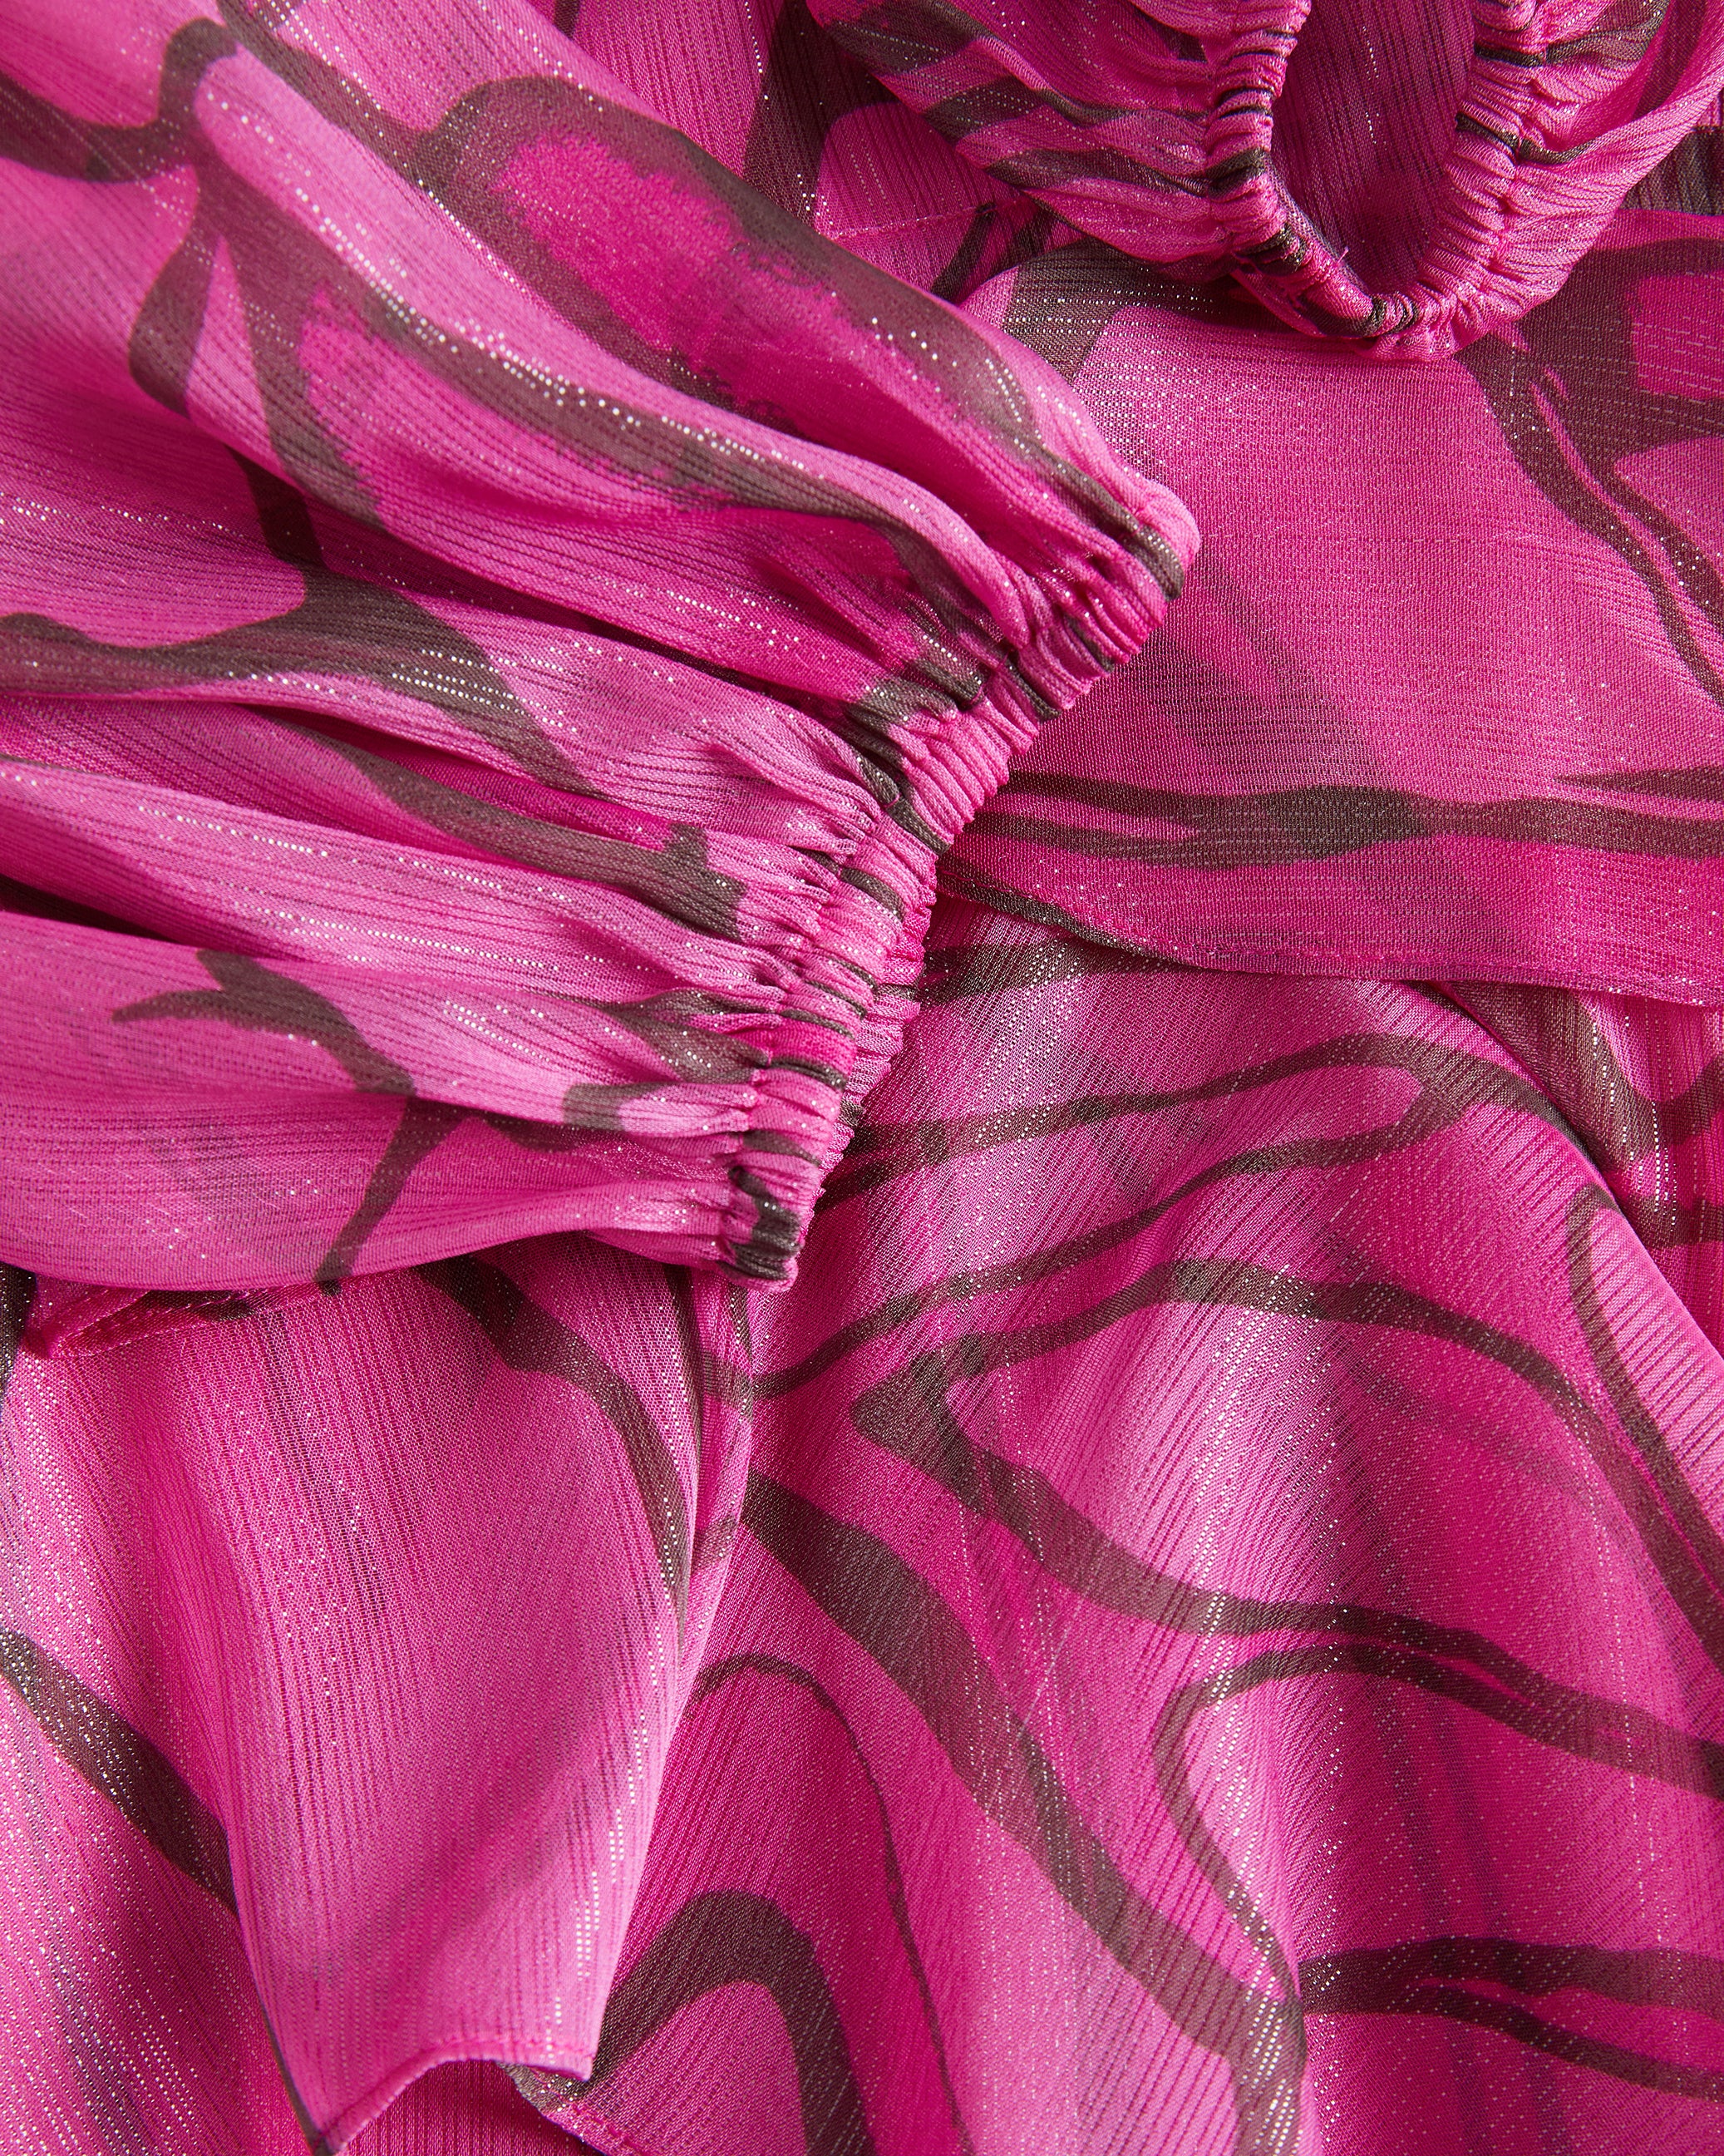 Victoir Ruffled Abstract Print Pinafore Dress